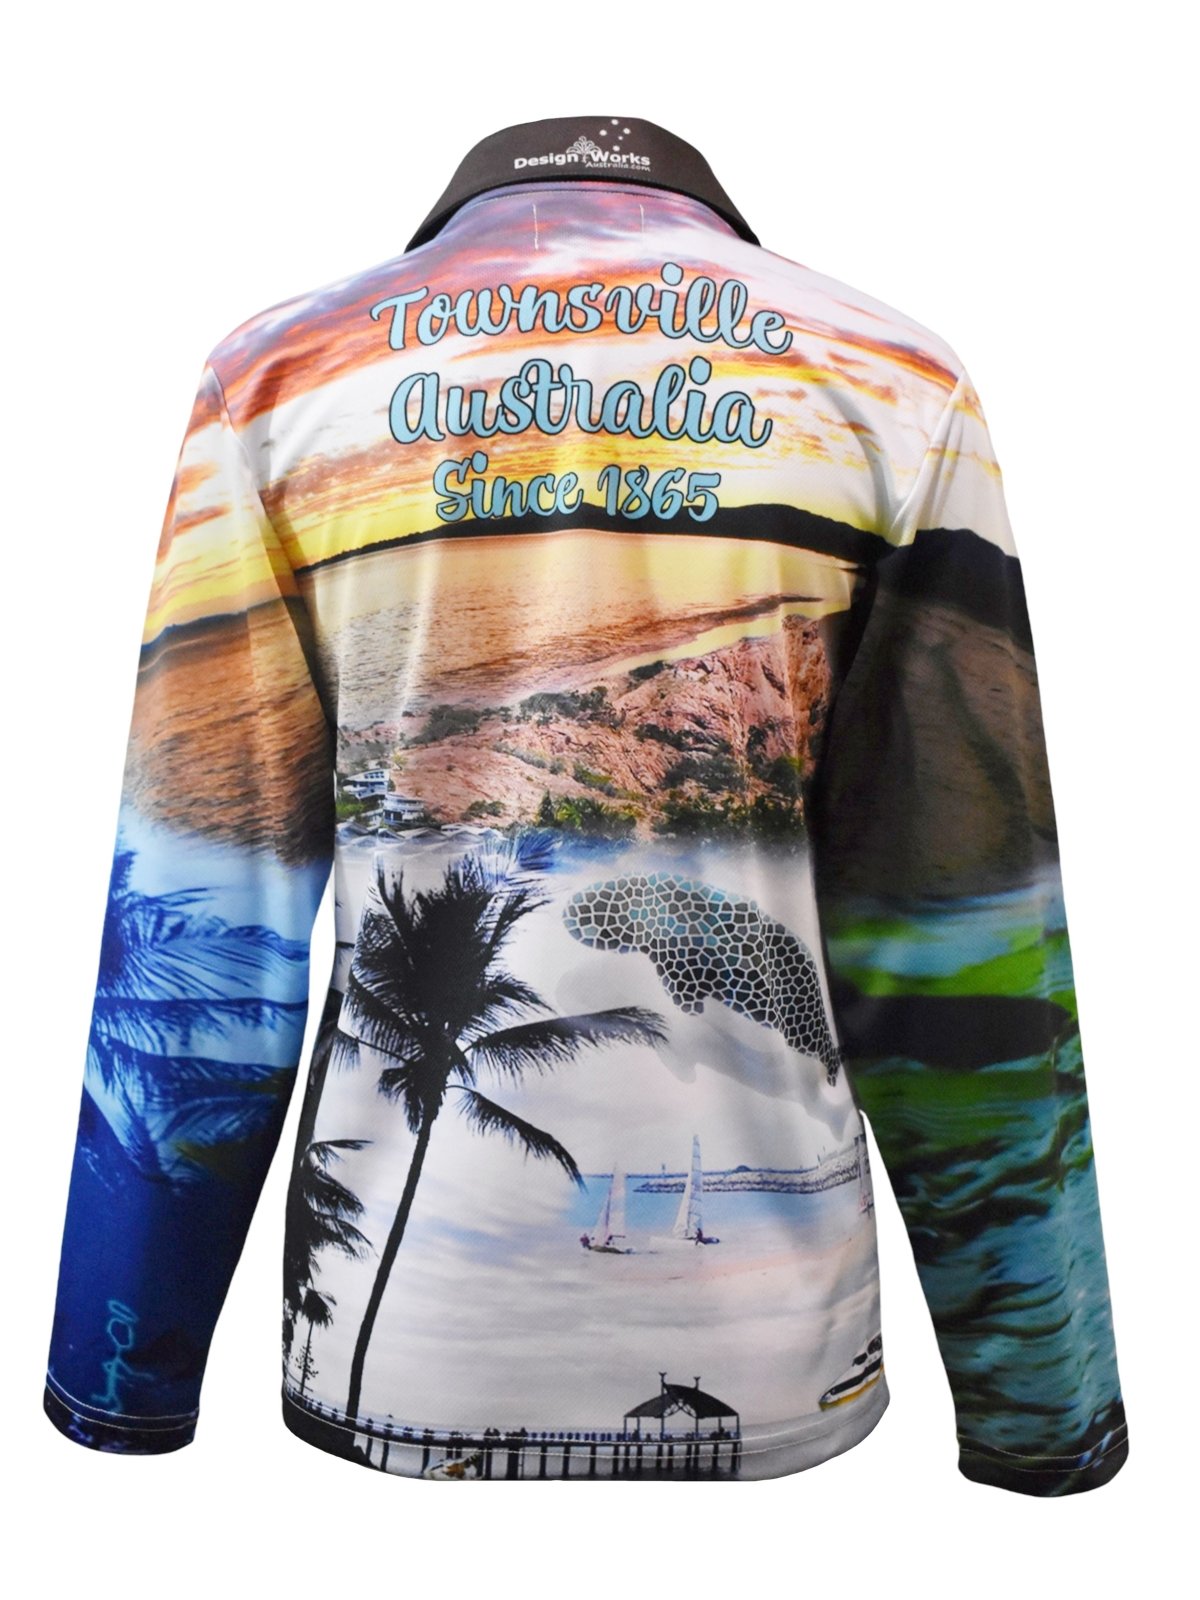 Townsville Barra – Fishing Shirt by LJMDesign